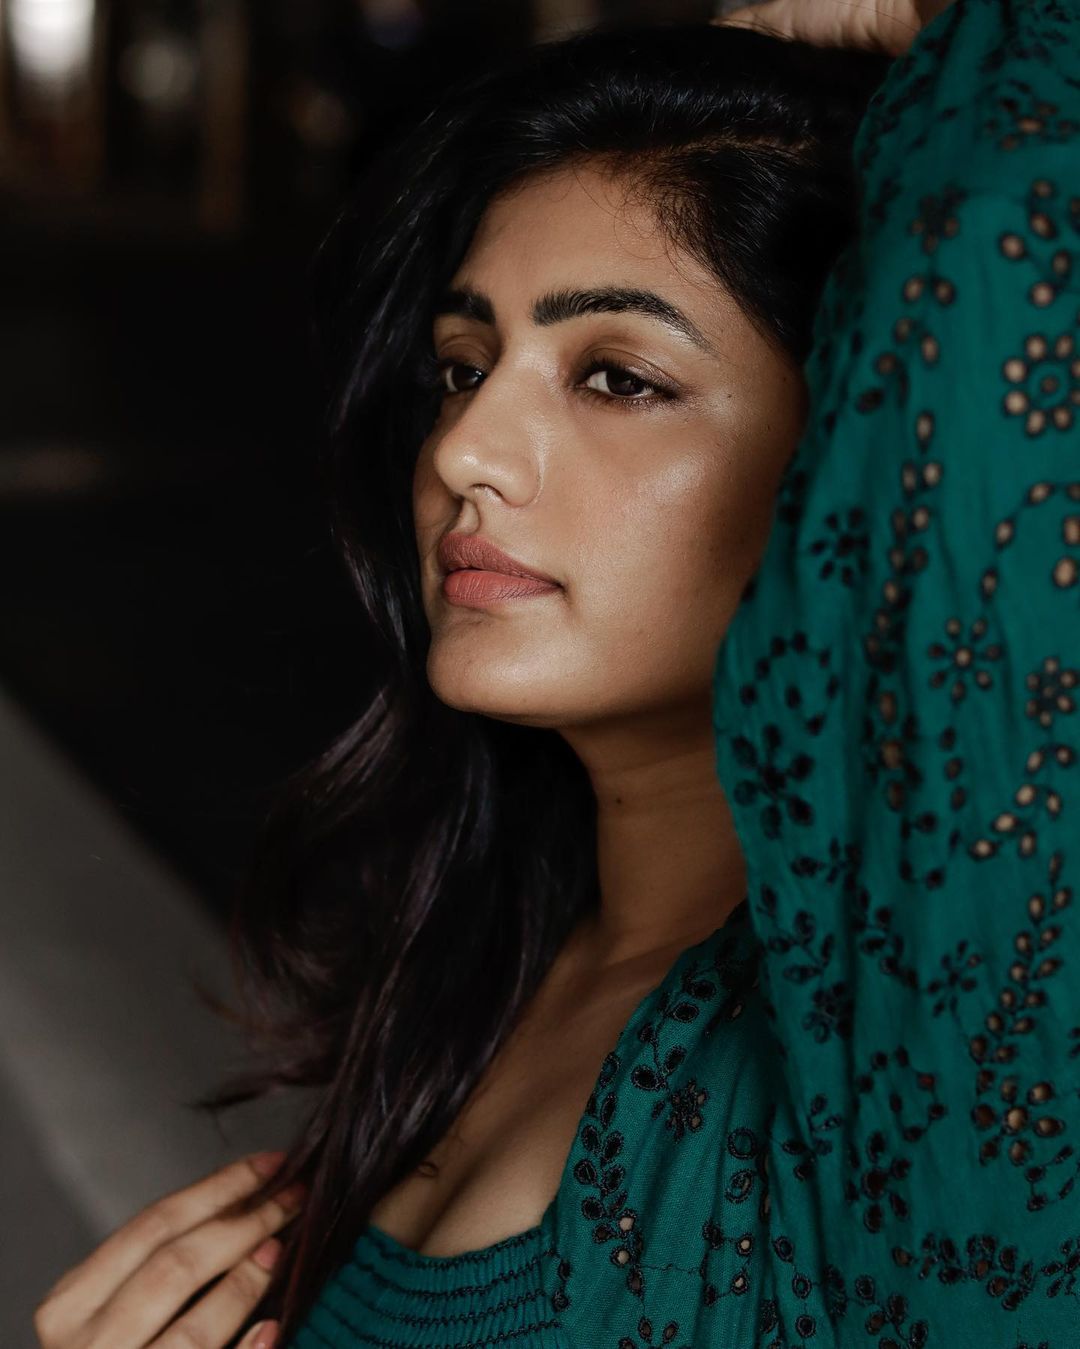 actress eesha rebba hot photos in saree and modern dress